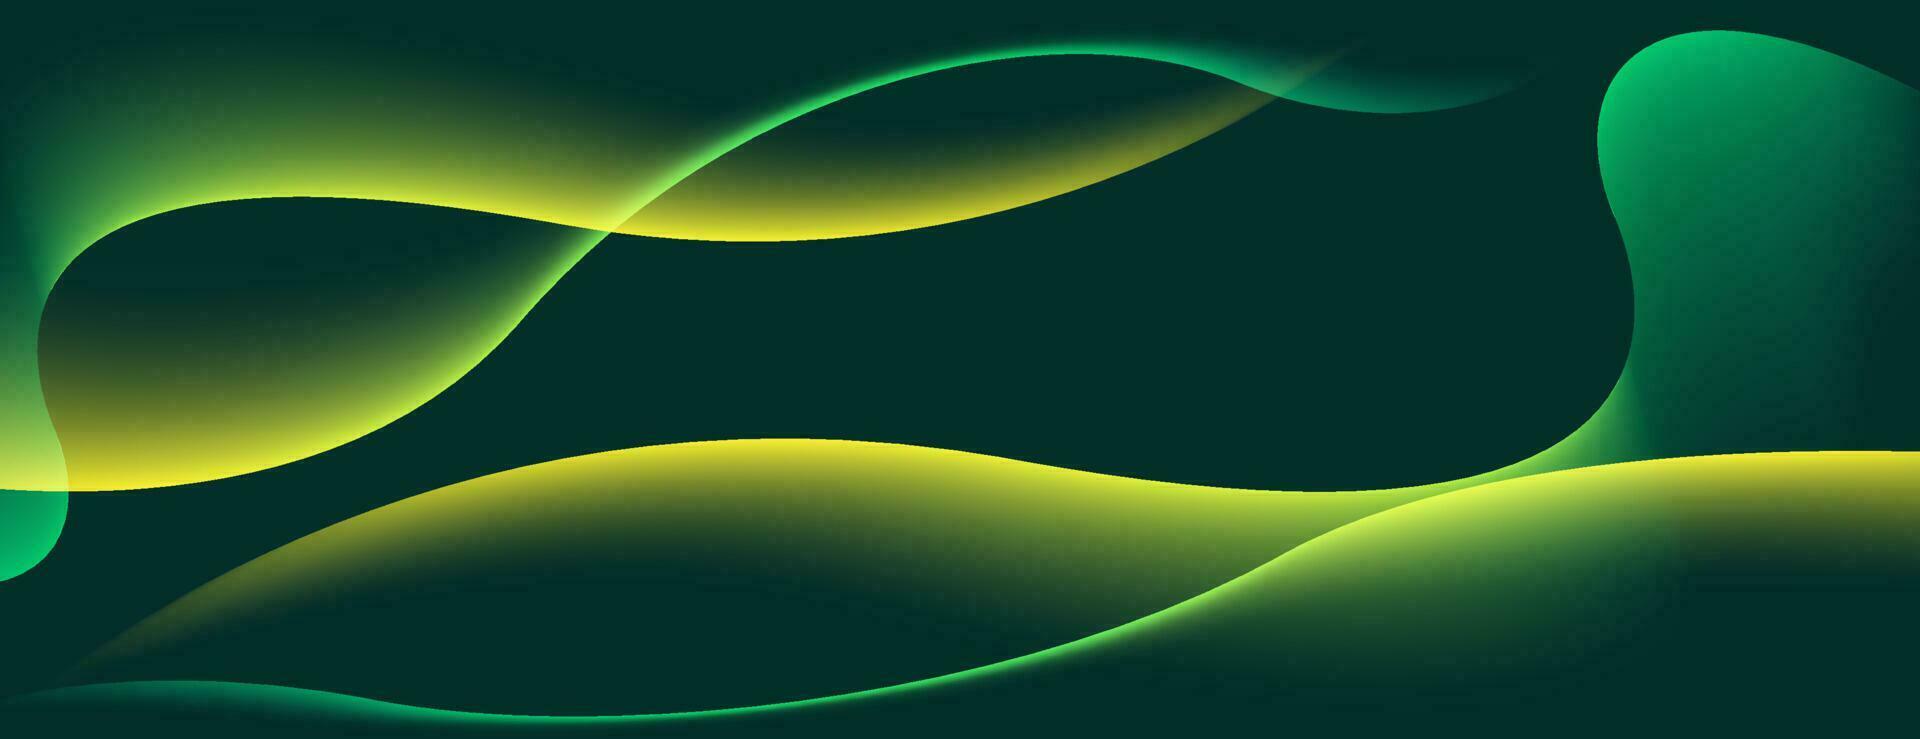 dynamische golf abstracte achtergrond met geel licht. vector ontwerpsjabloon